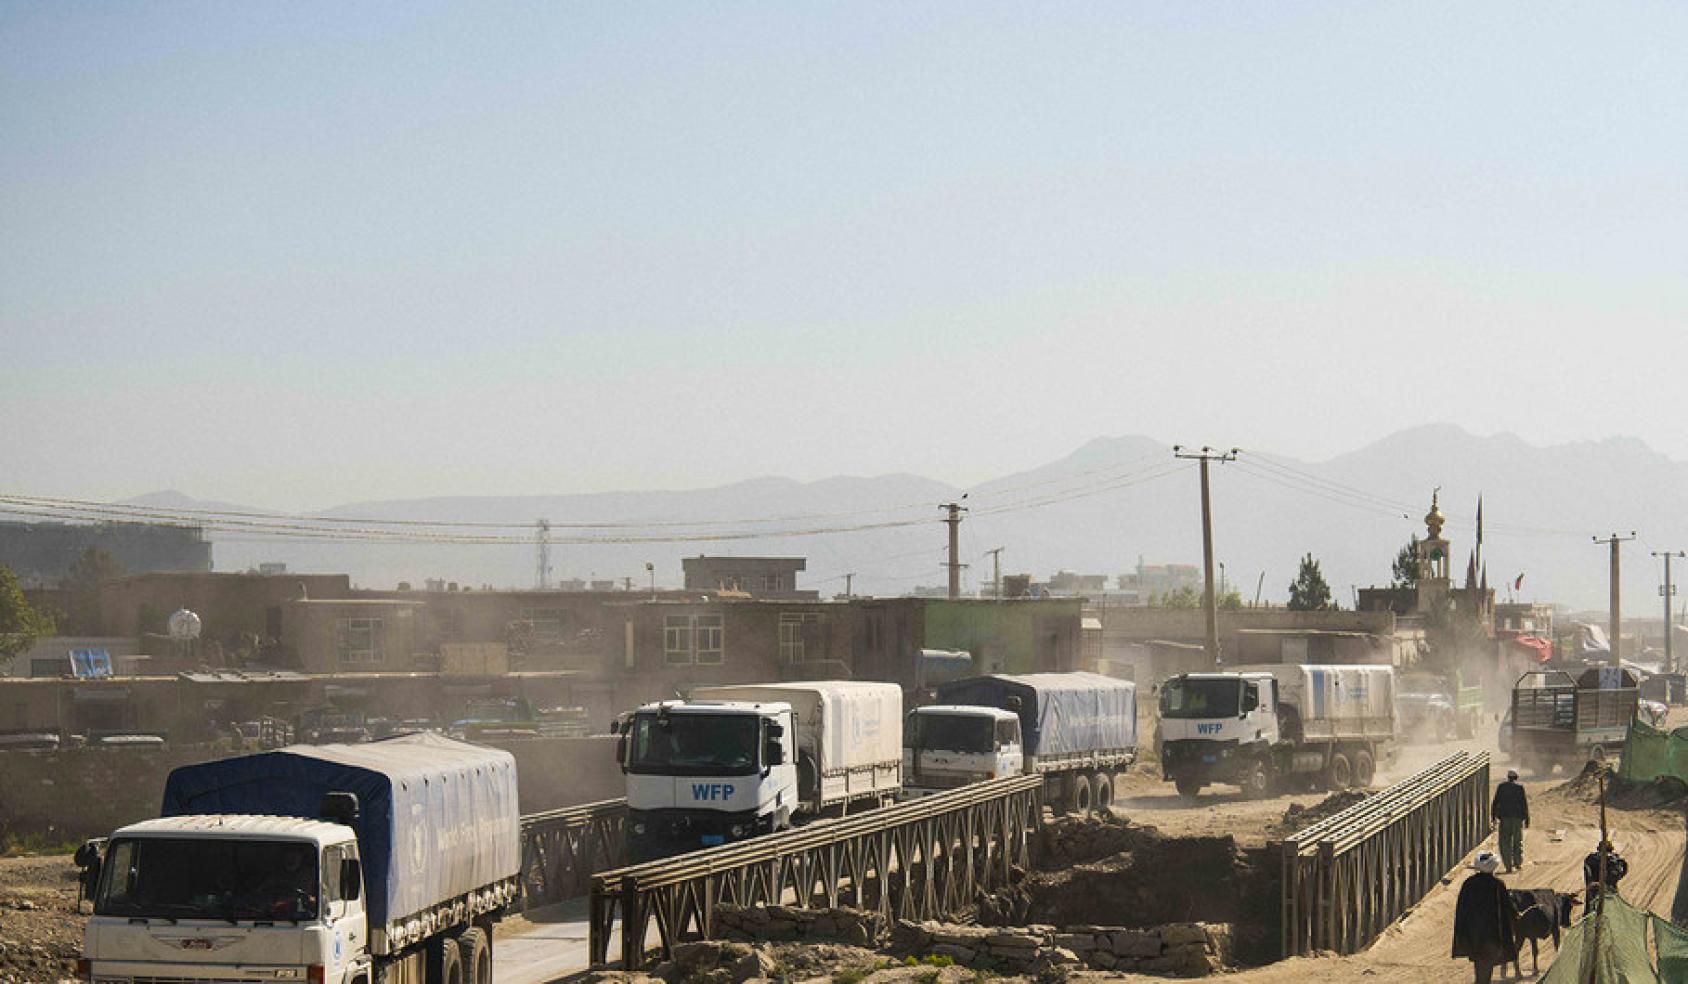 一行世界粮食计划署的卡车驶过尘土飞扬的道路，运送粮食保障基本需求。